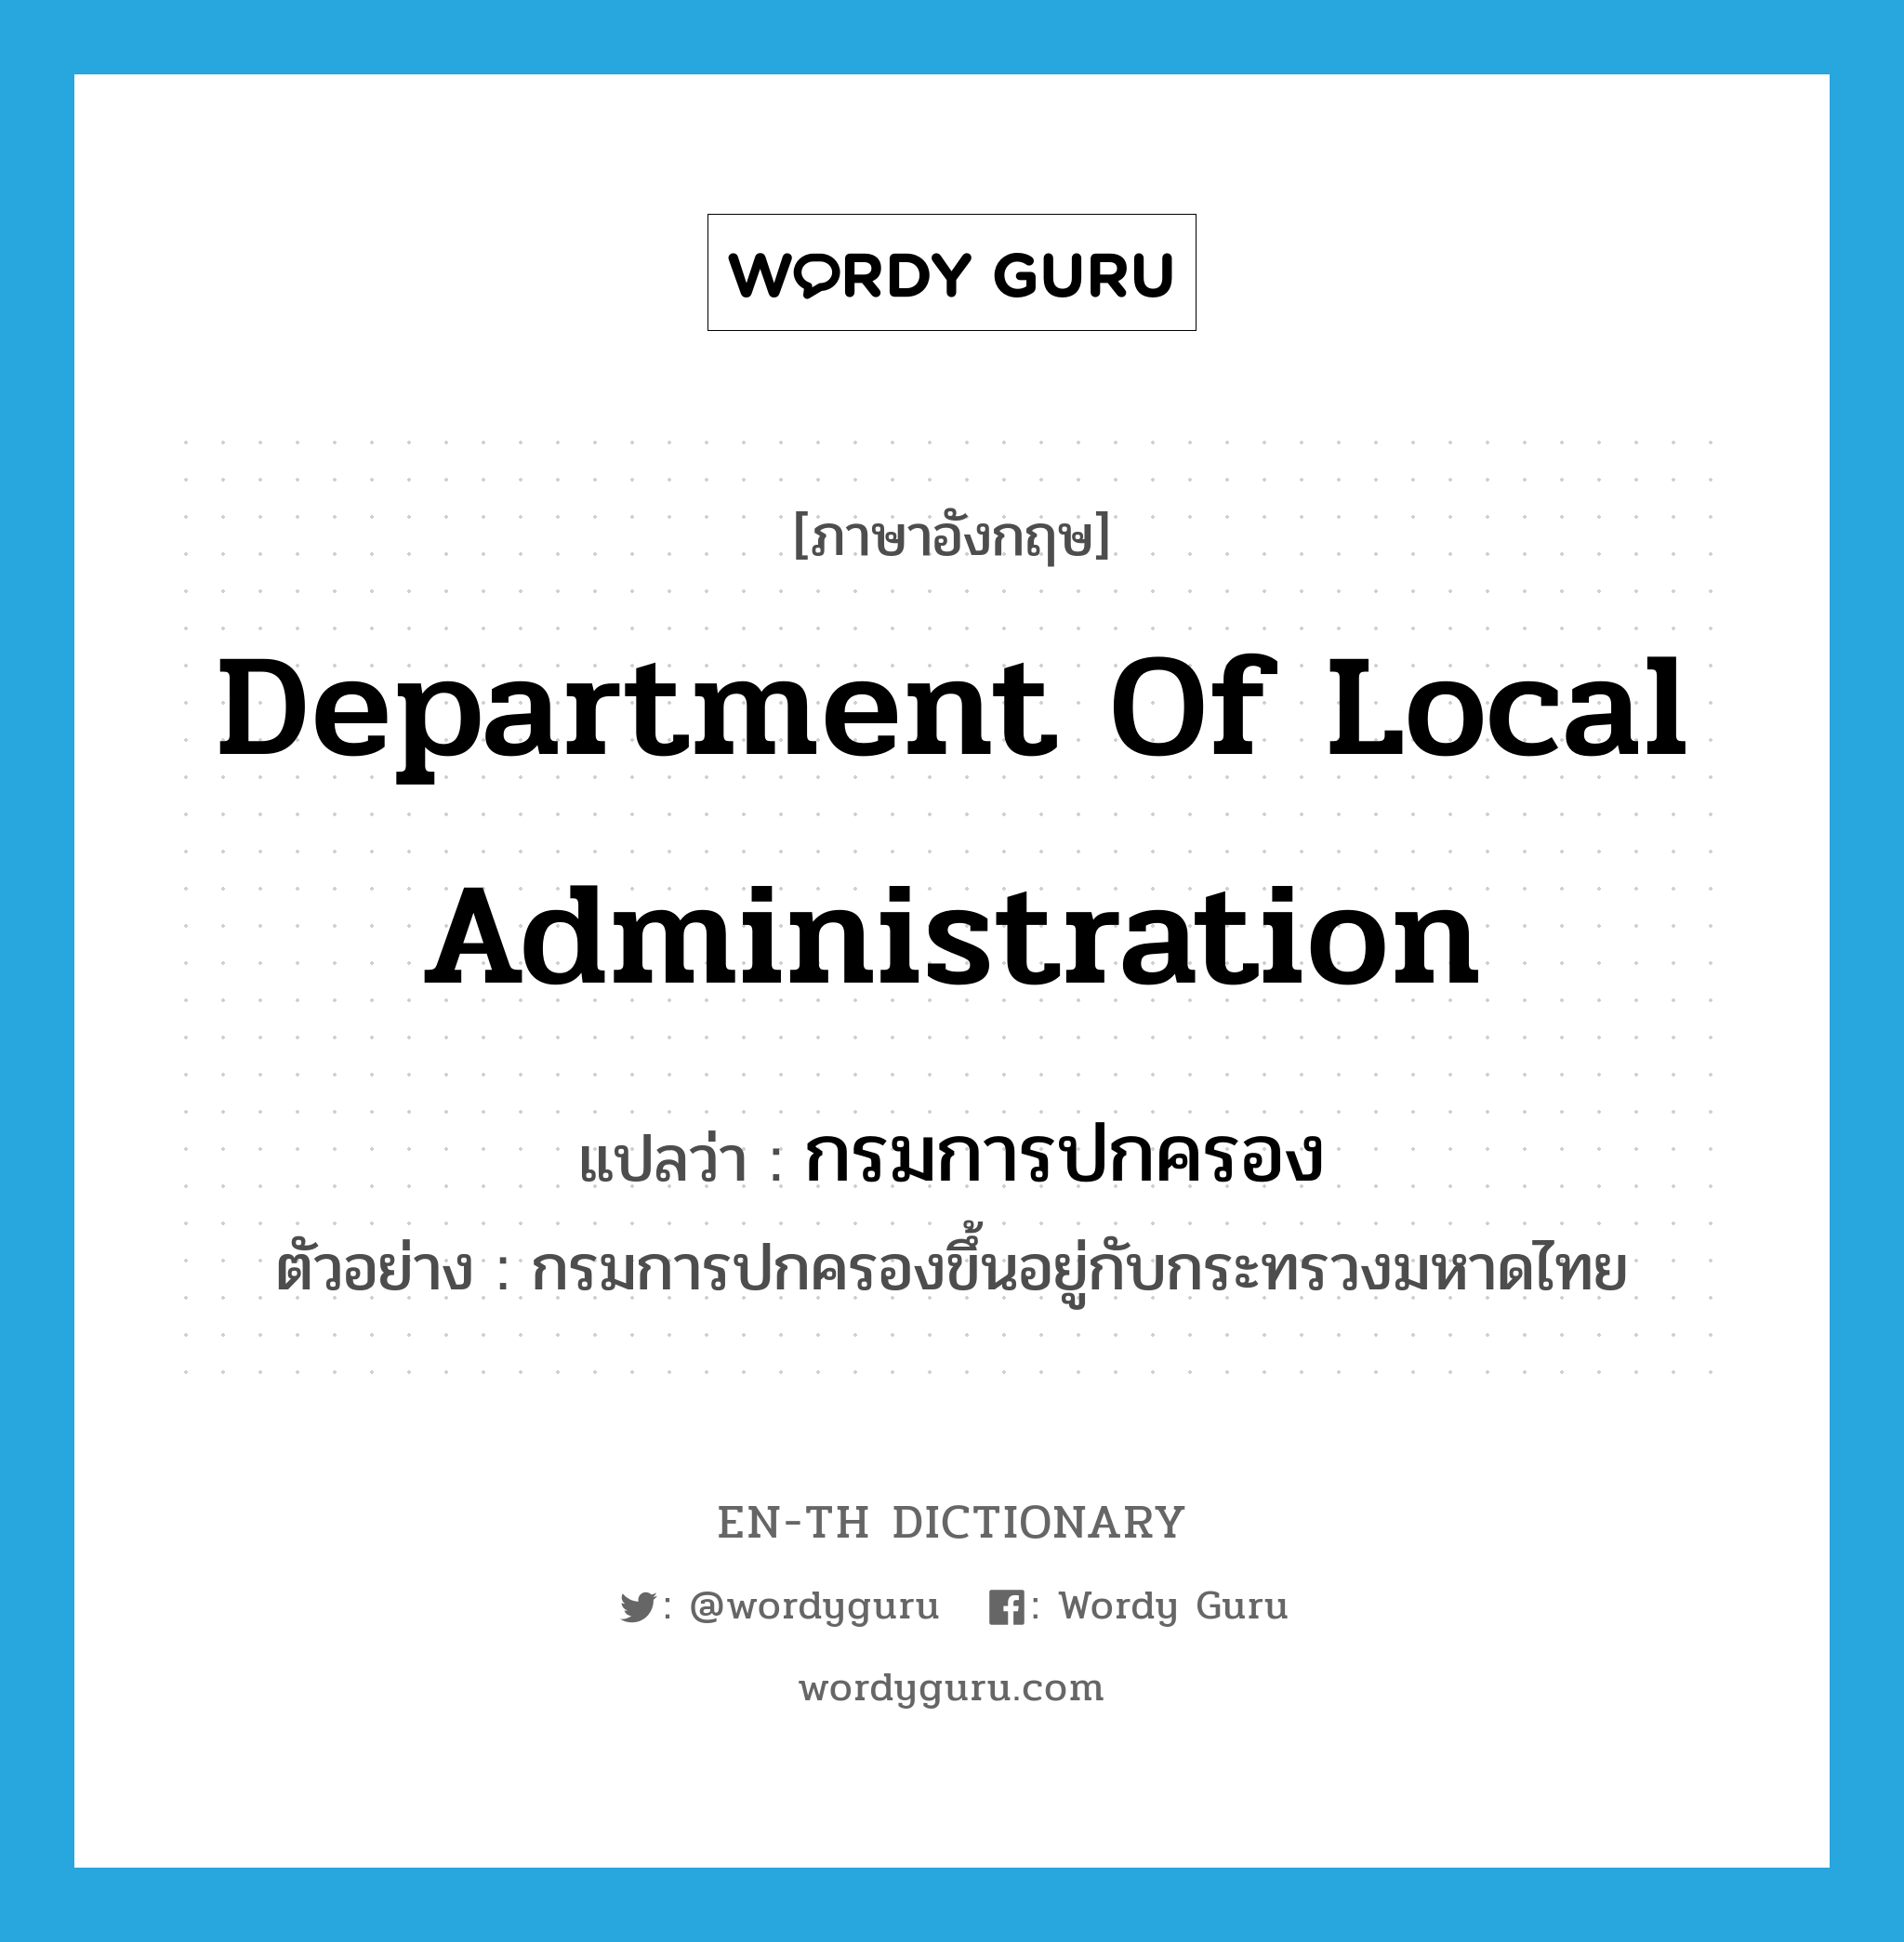 Department of Local Administration แปลว่า?, คำศัพท์ภาษาอังกฤษ Department of Local Administration แปลว่า กรมการปกครอง ประเภท N ตัวอย่าง กรมการปกครองขึ้นอยู่กับกระทรวงมหาดไทย หมวด N